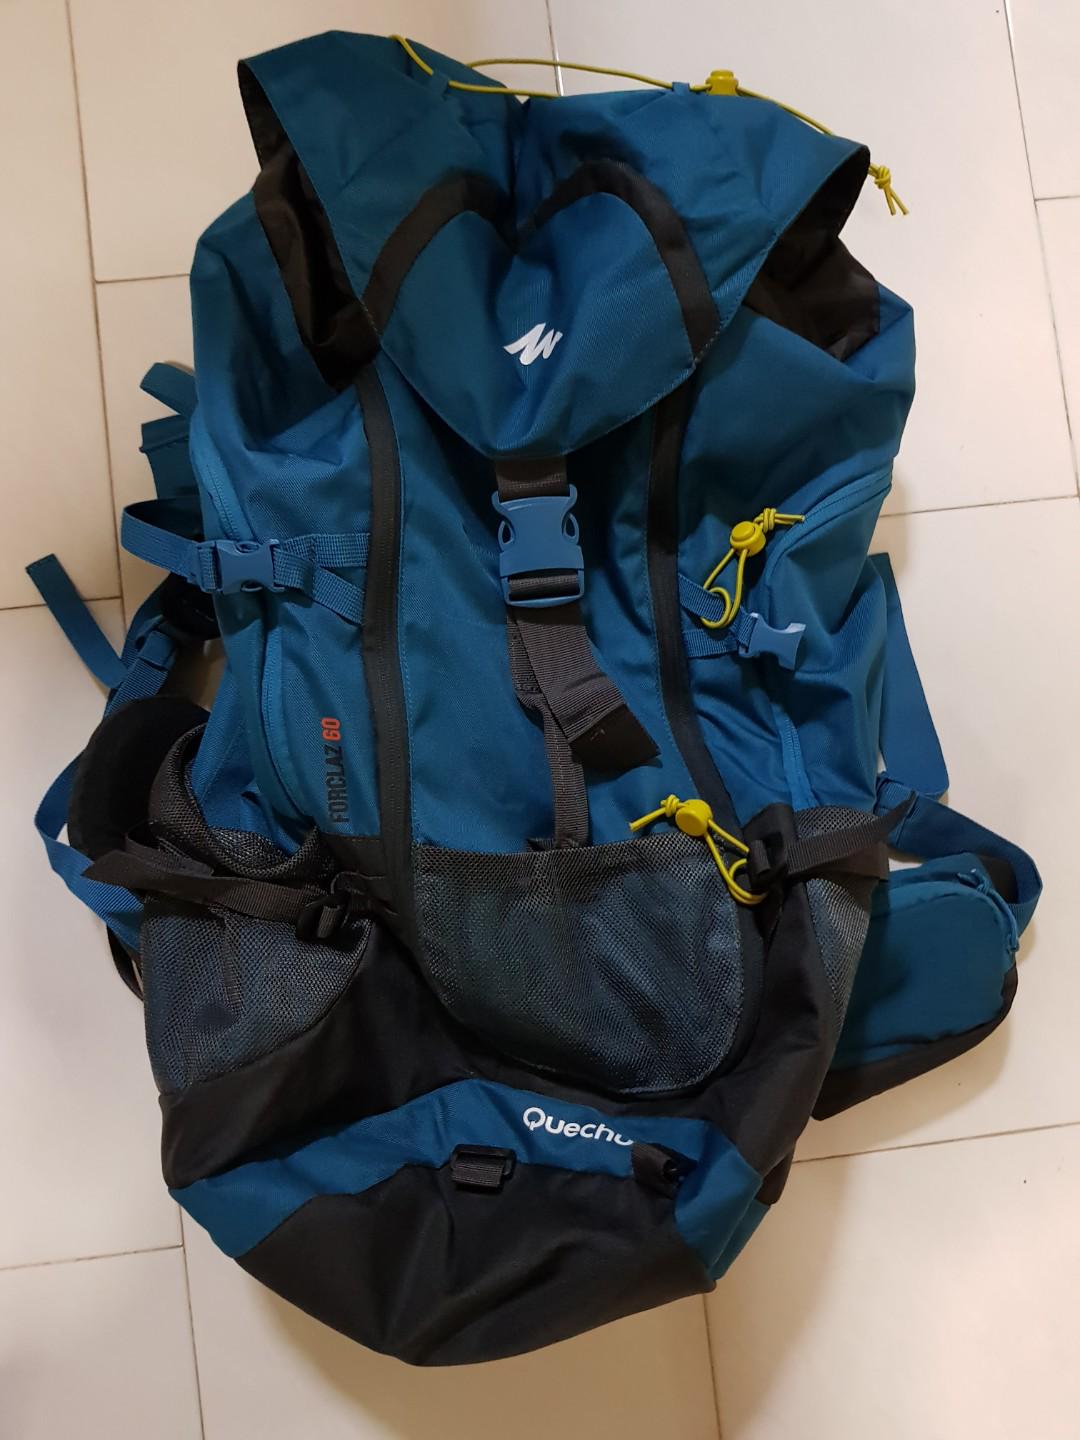 quechua 60l backpack review